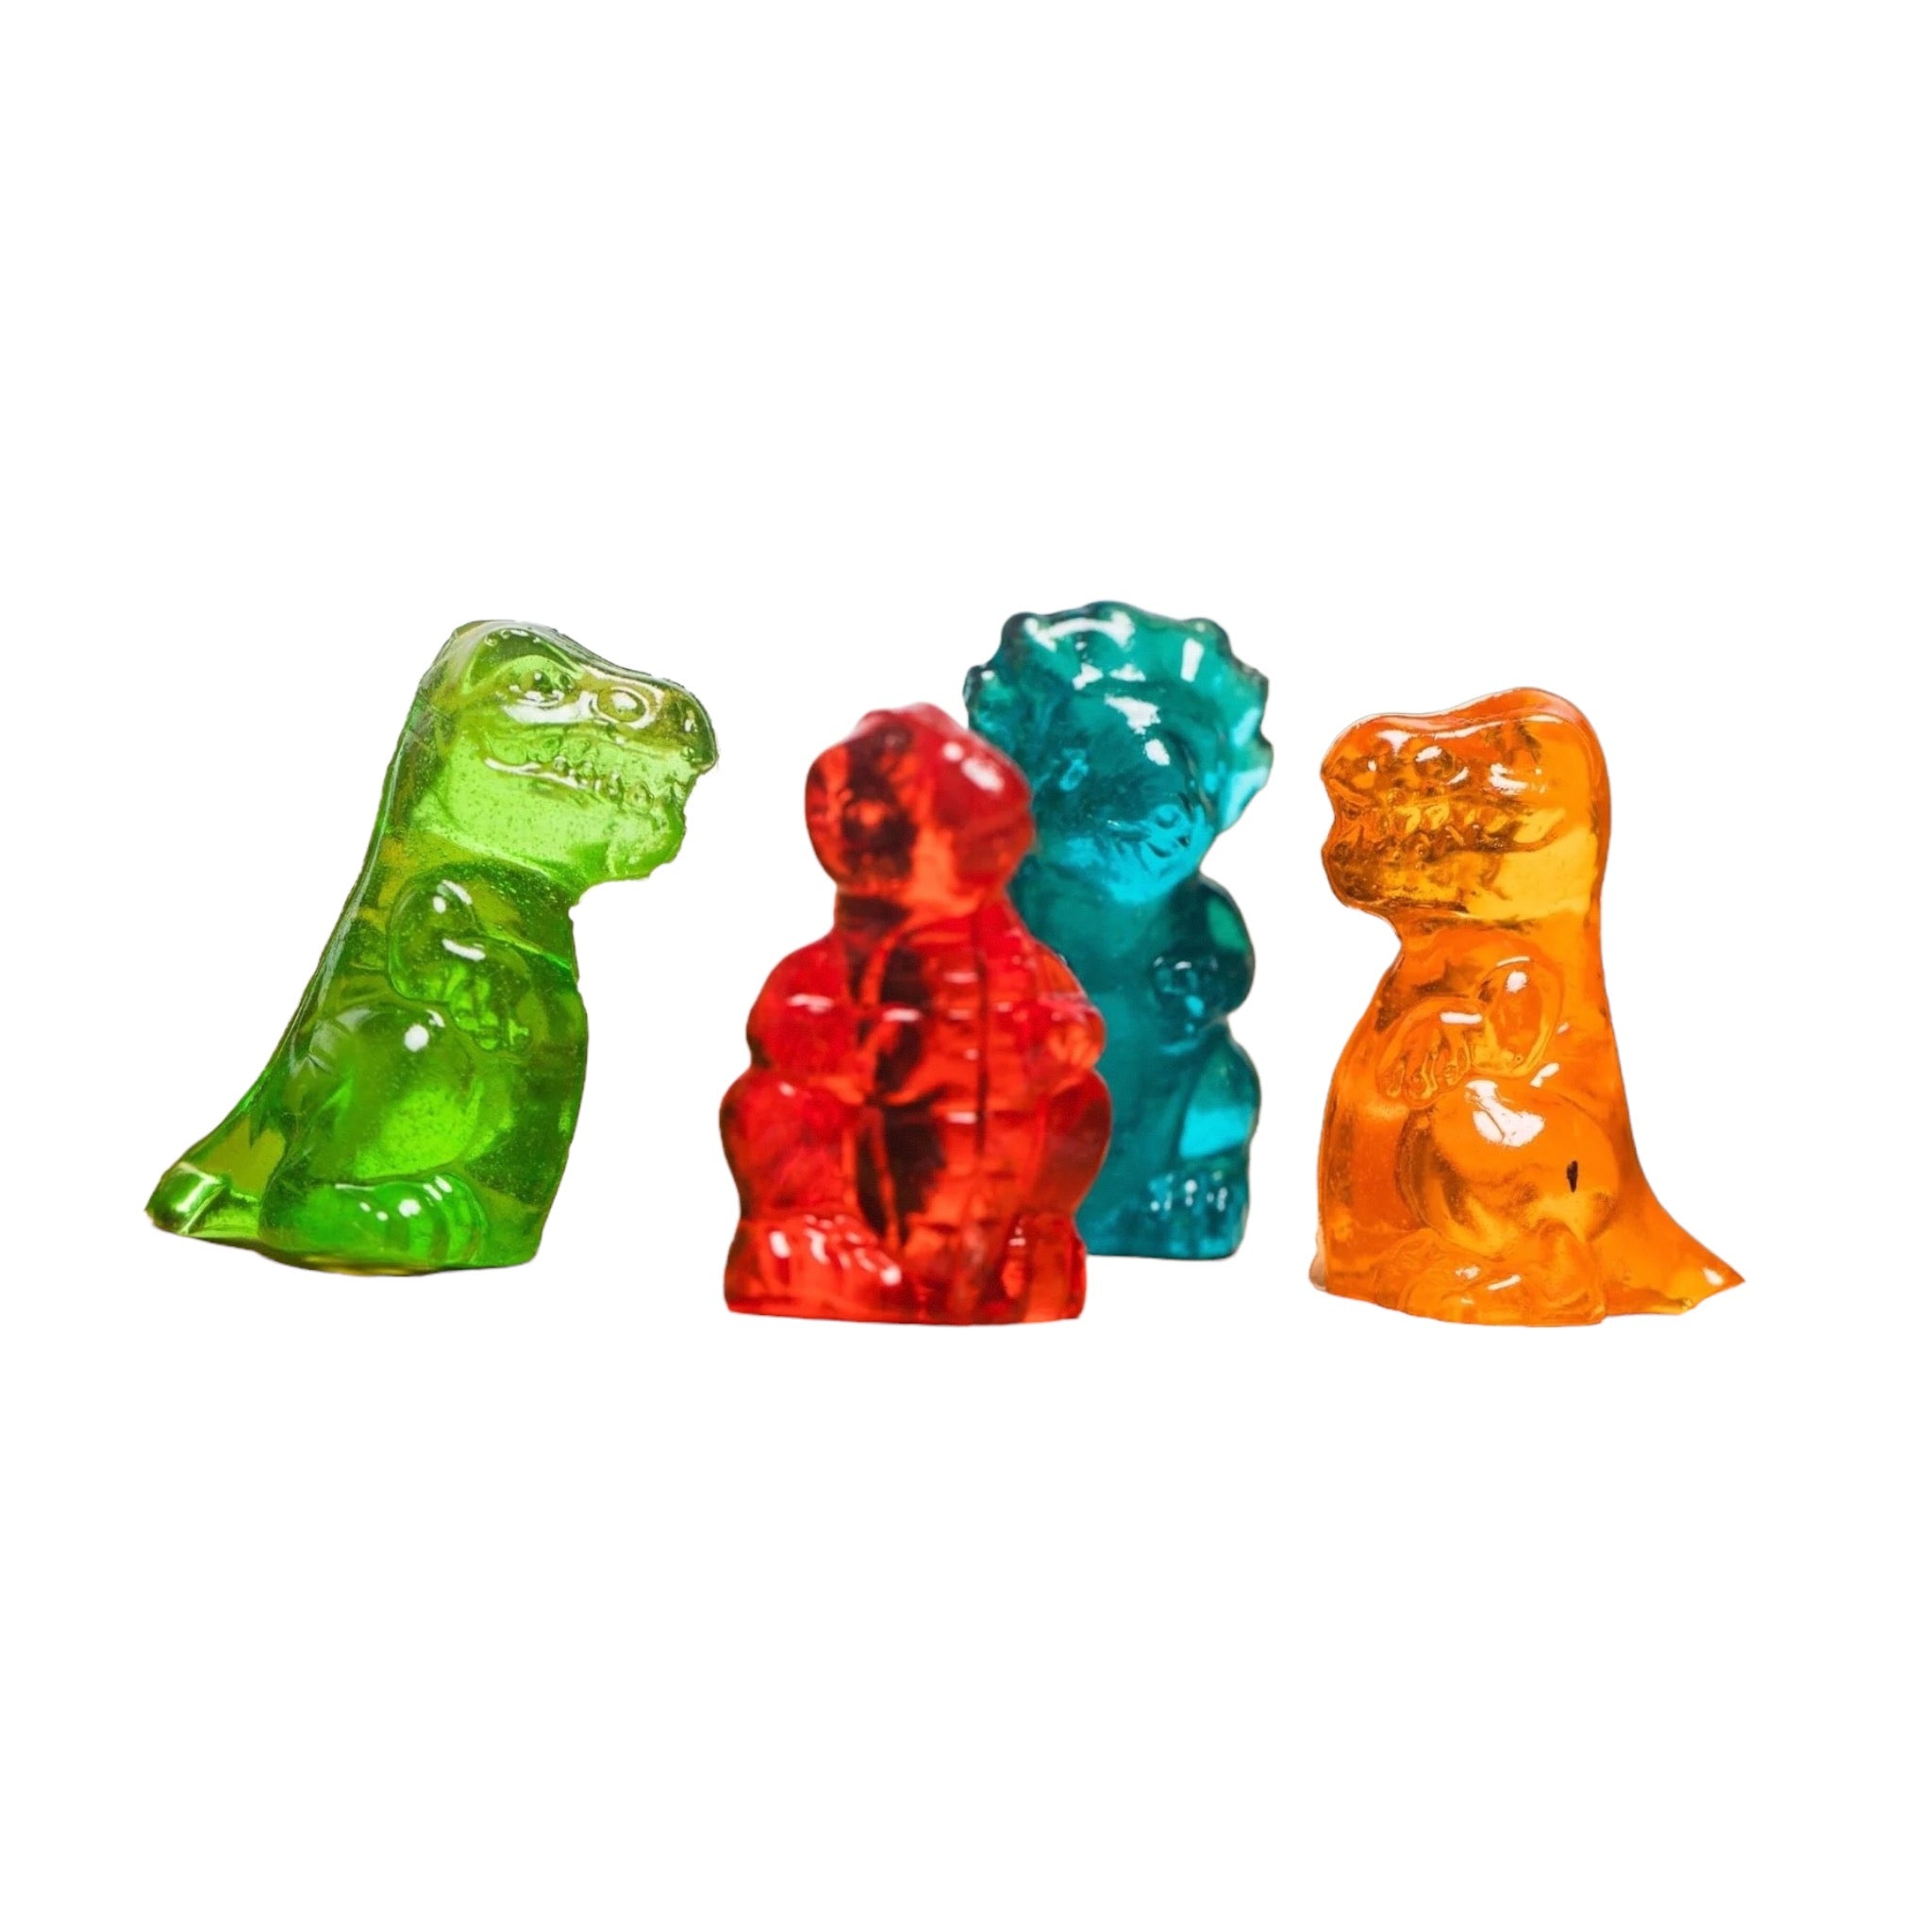 Gummi 3D Blocks  Sweet Treats Candy